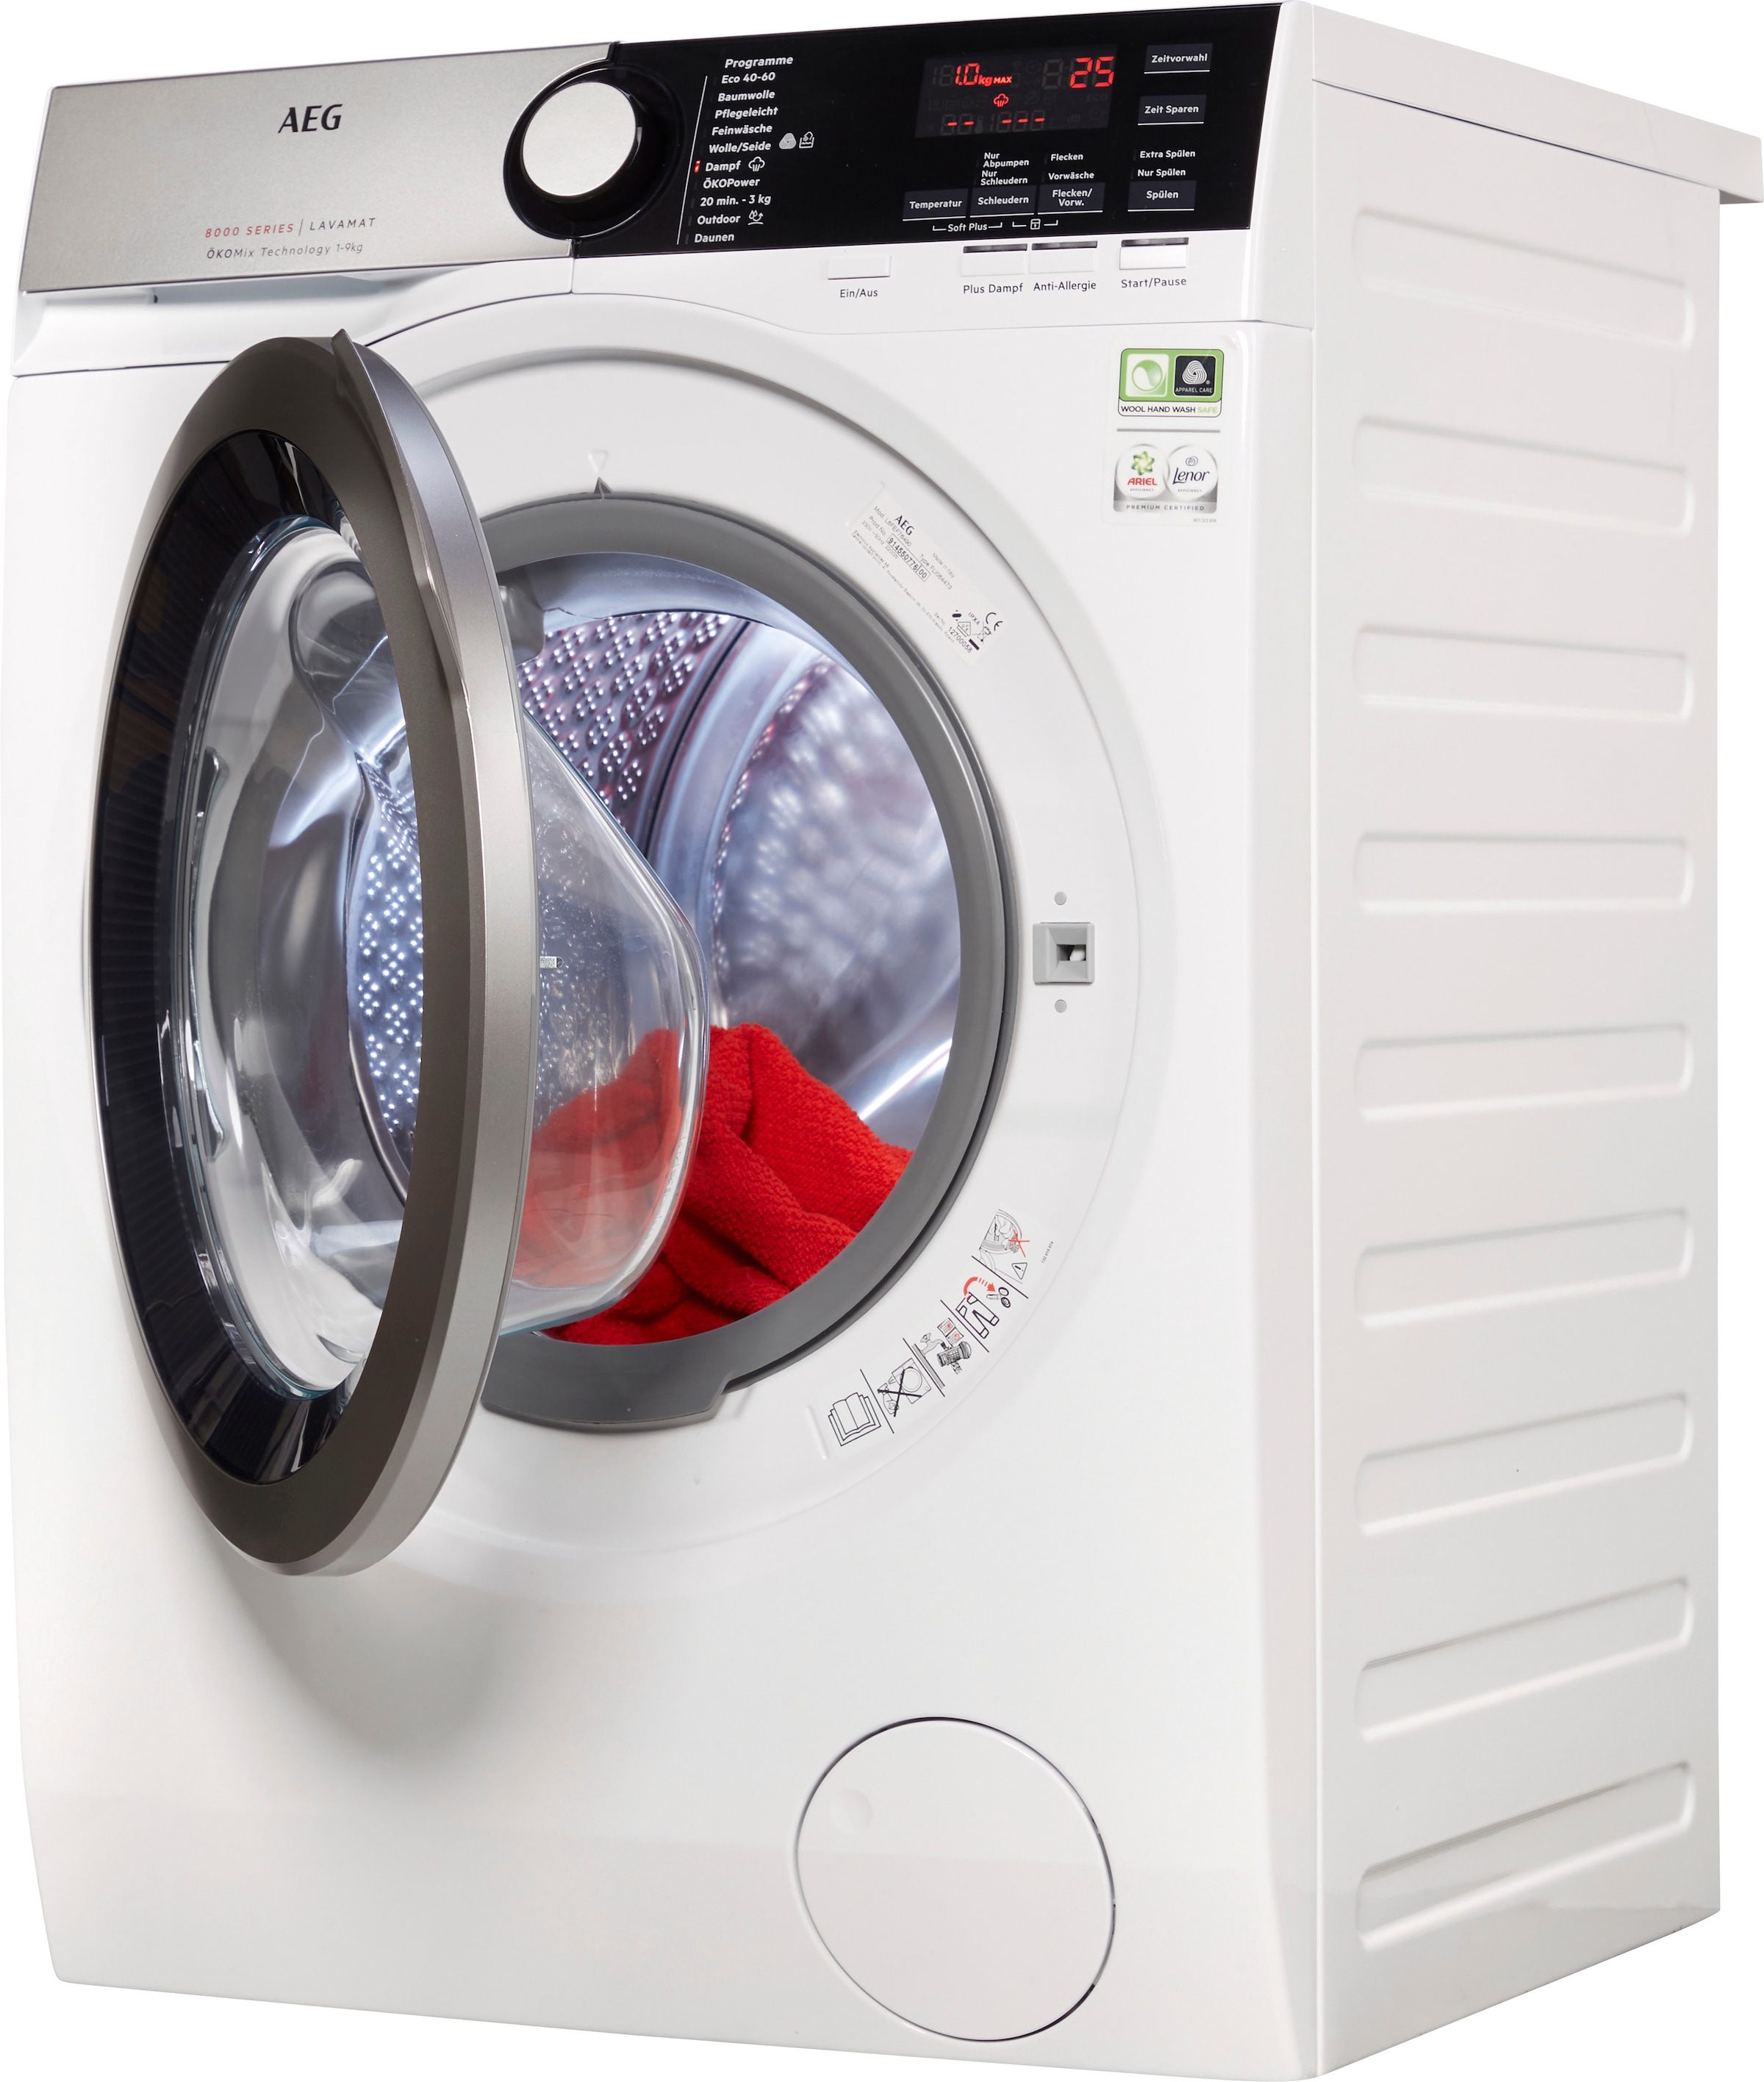 3 XXL kg, mit Waschmaschine, Jahren Garantie L8FEF76490, U/min 1400 AEG 9